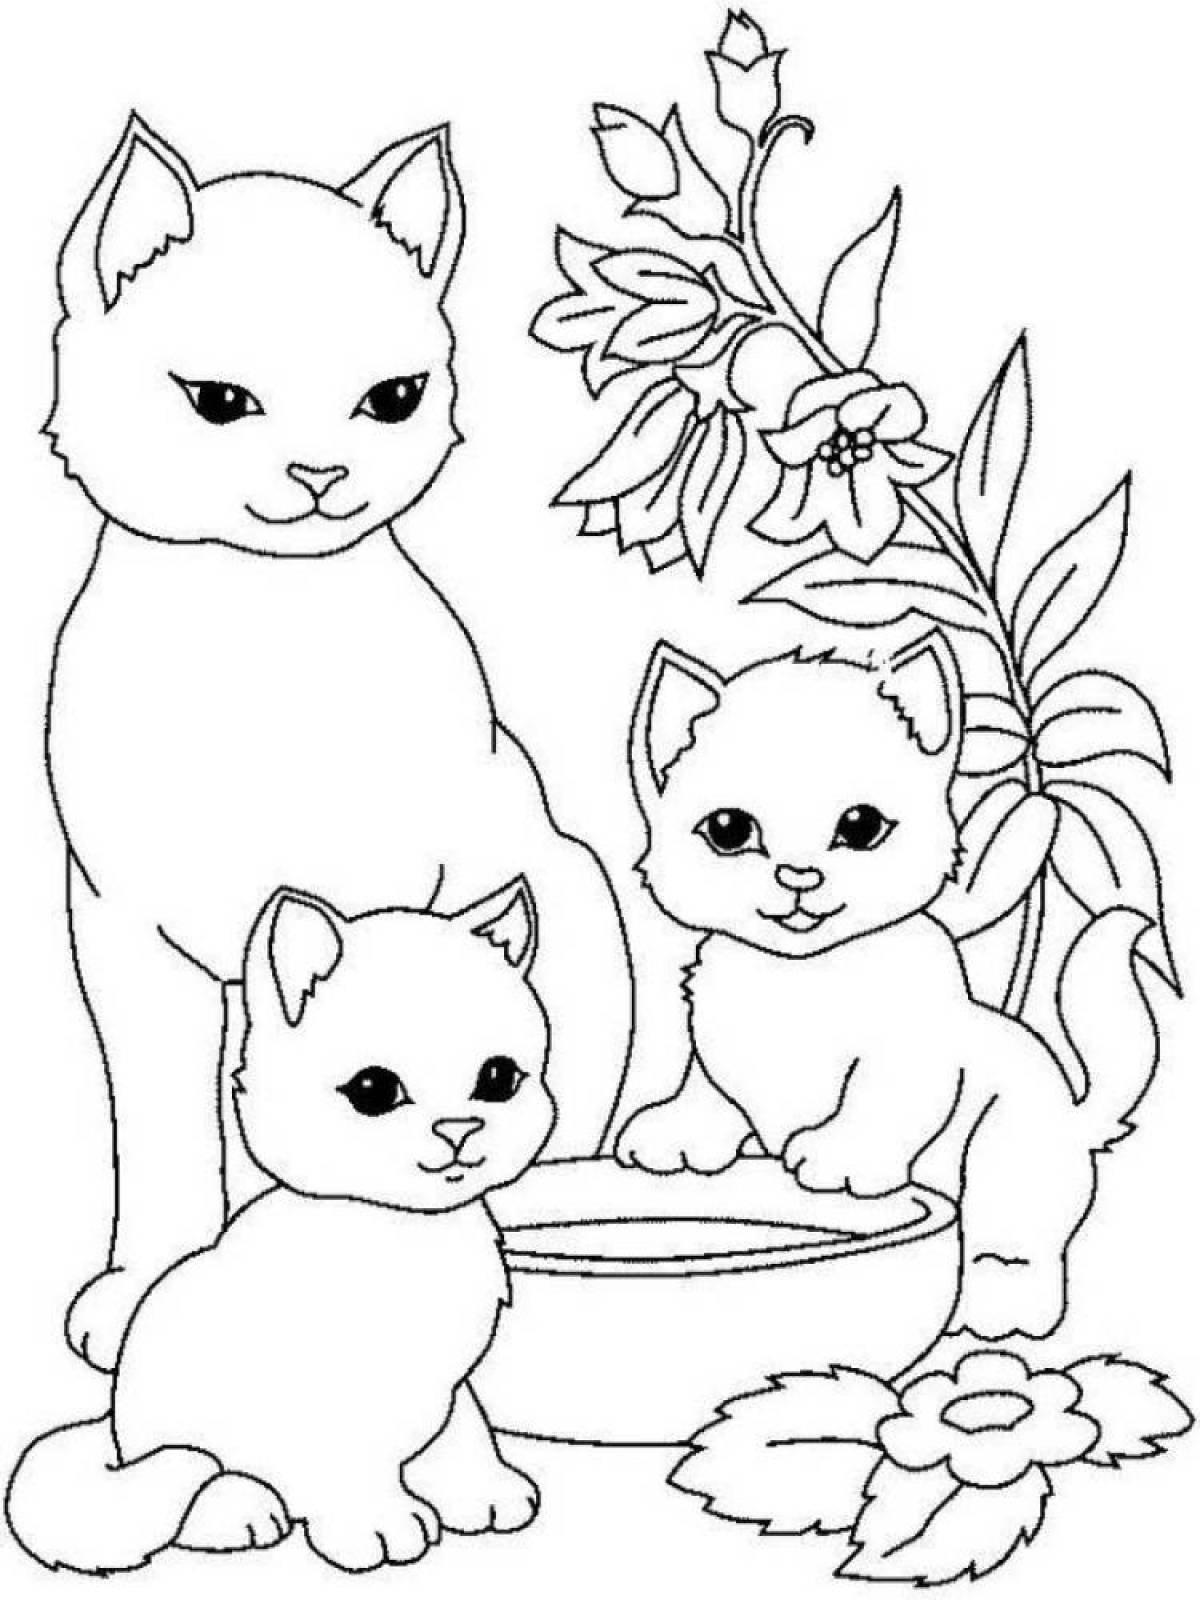 Игривая раскраска кошка для детей 6-7 лет